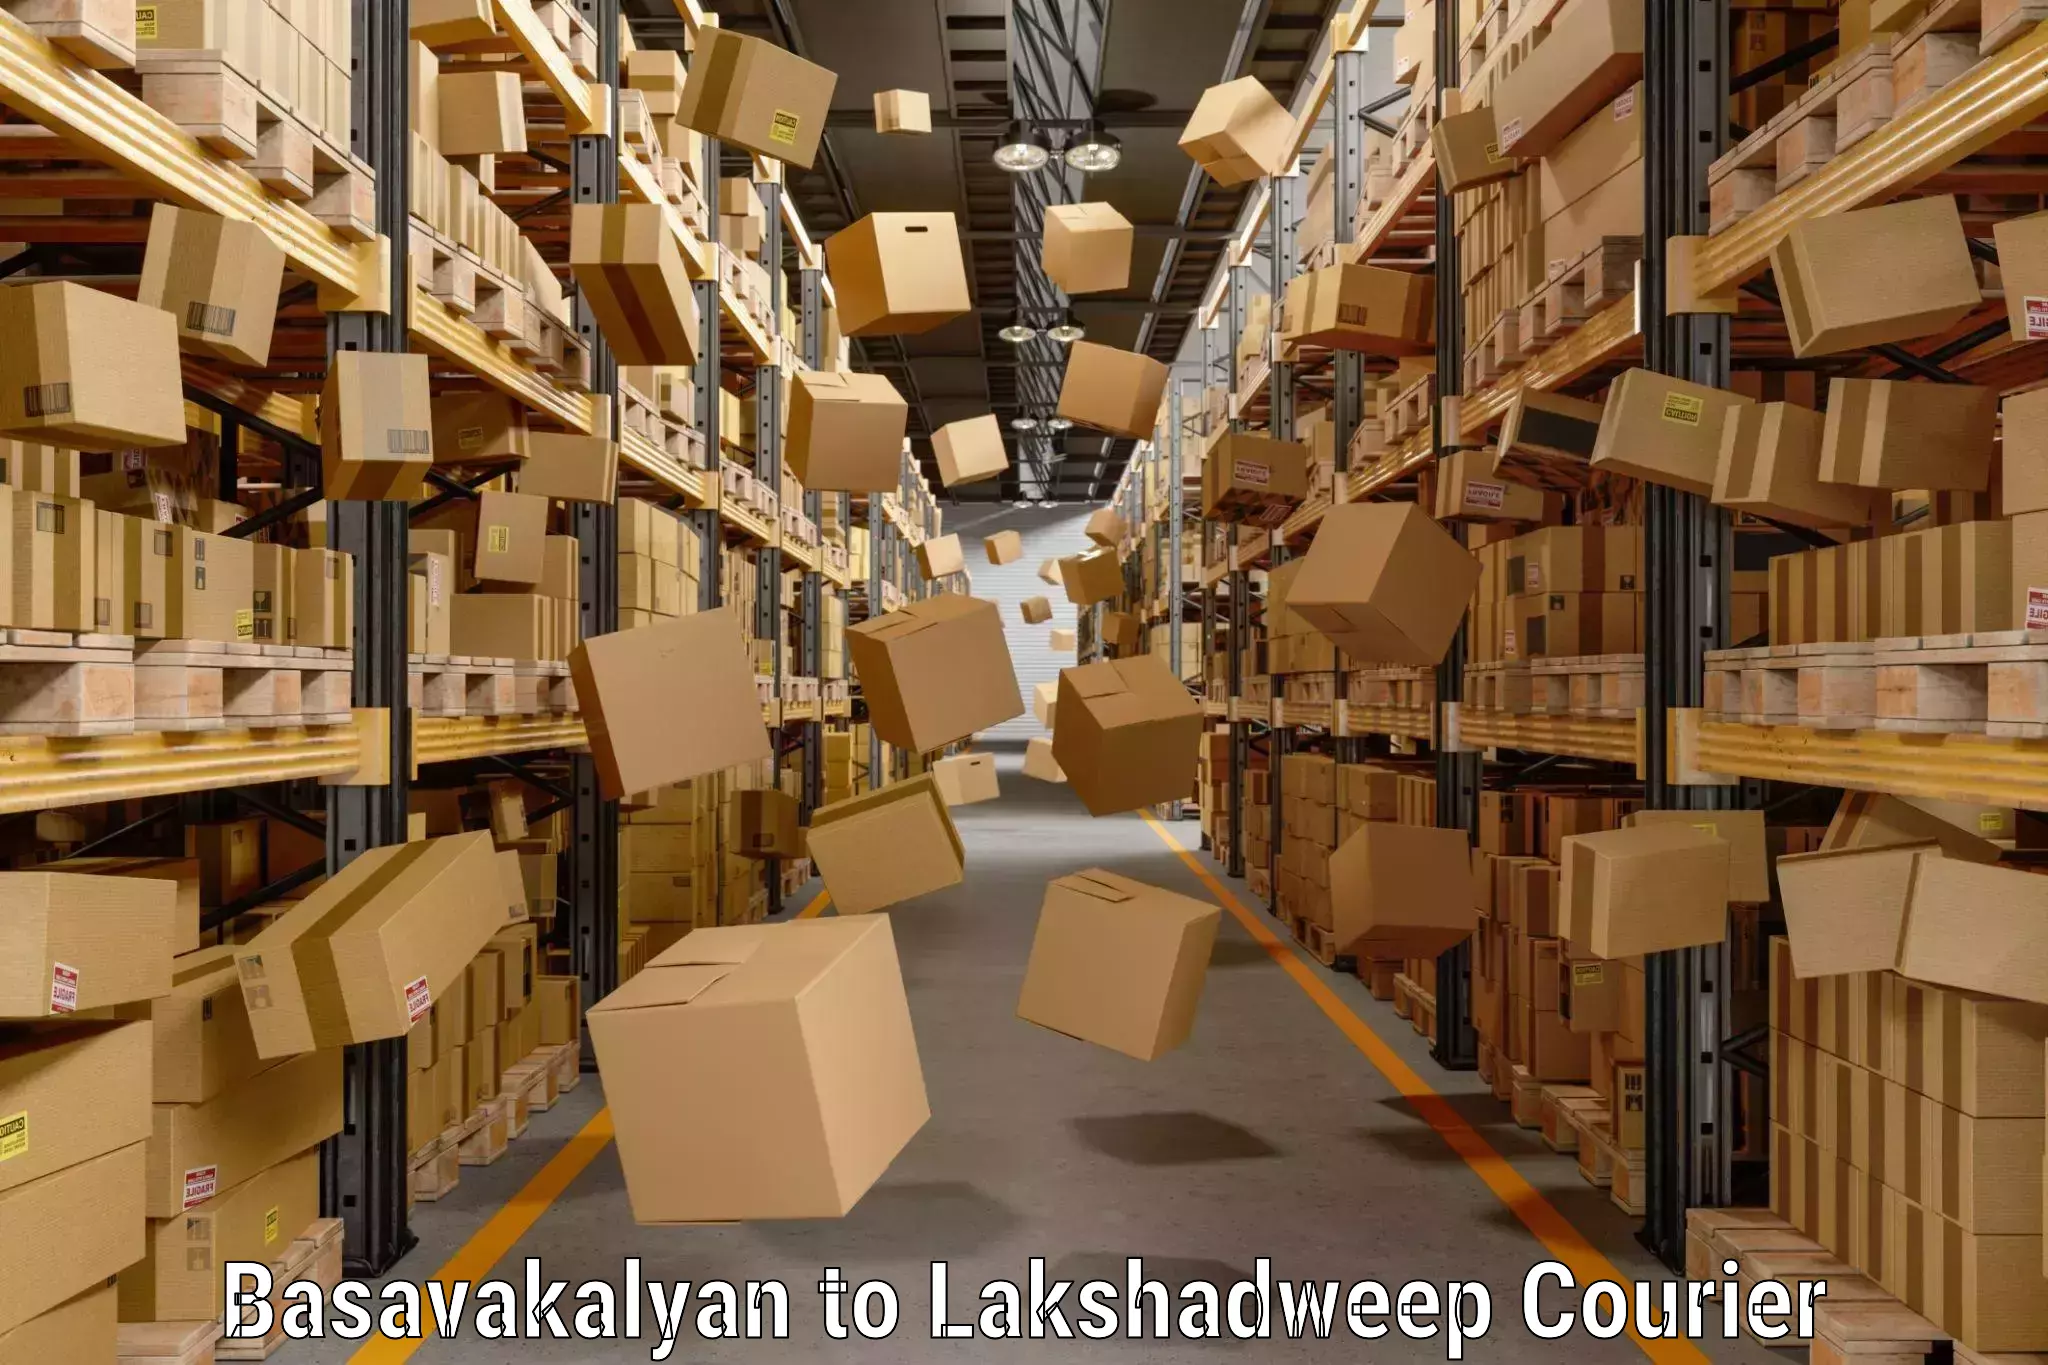 Luggage delivery network Basavakalyan to Lakshadweep